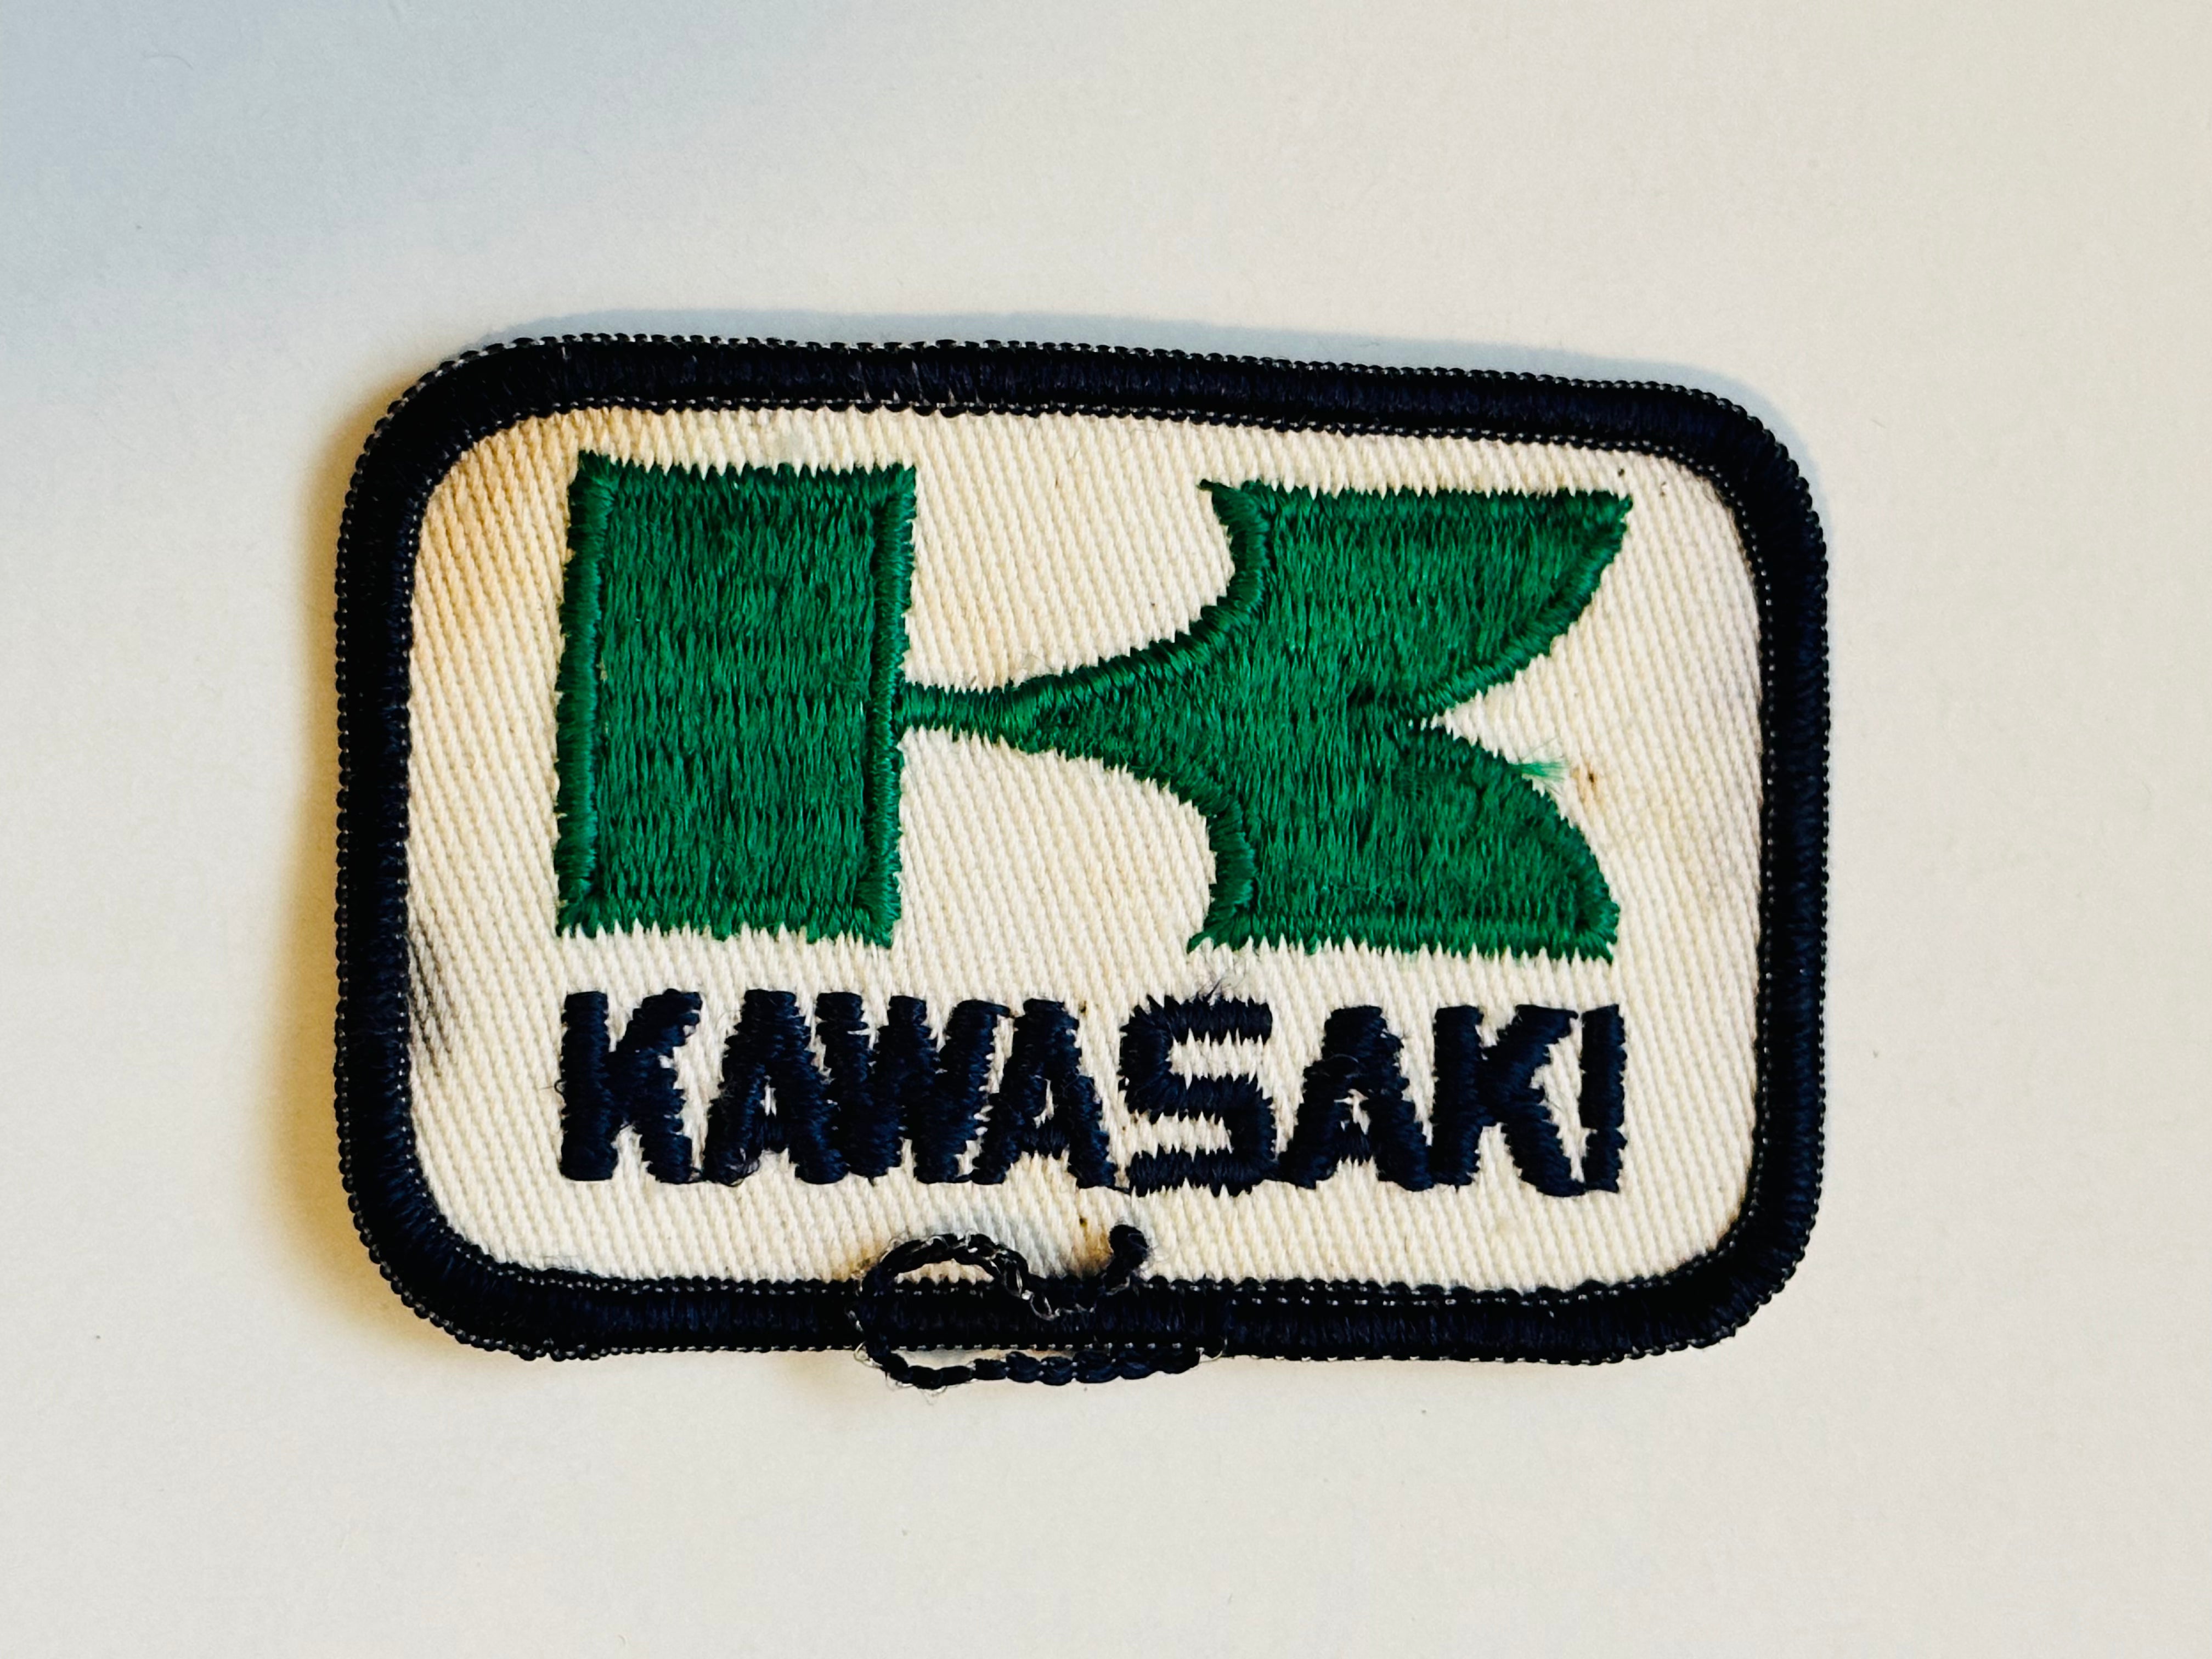 Kawasaki Motorcycle rare original patch 1980